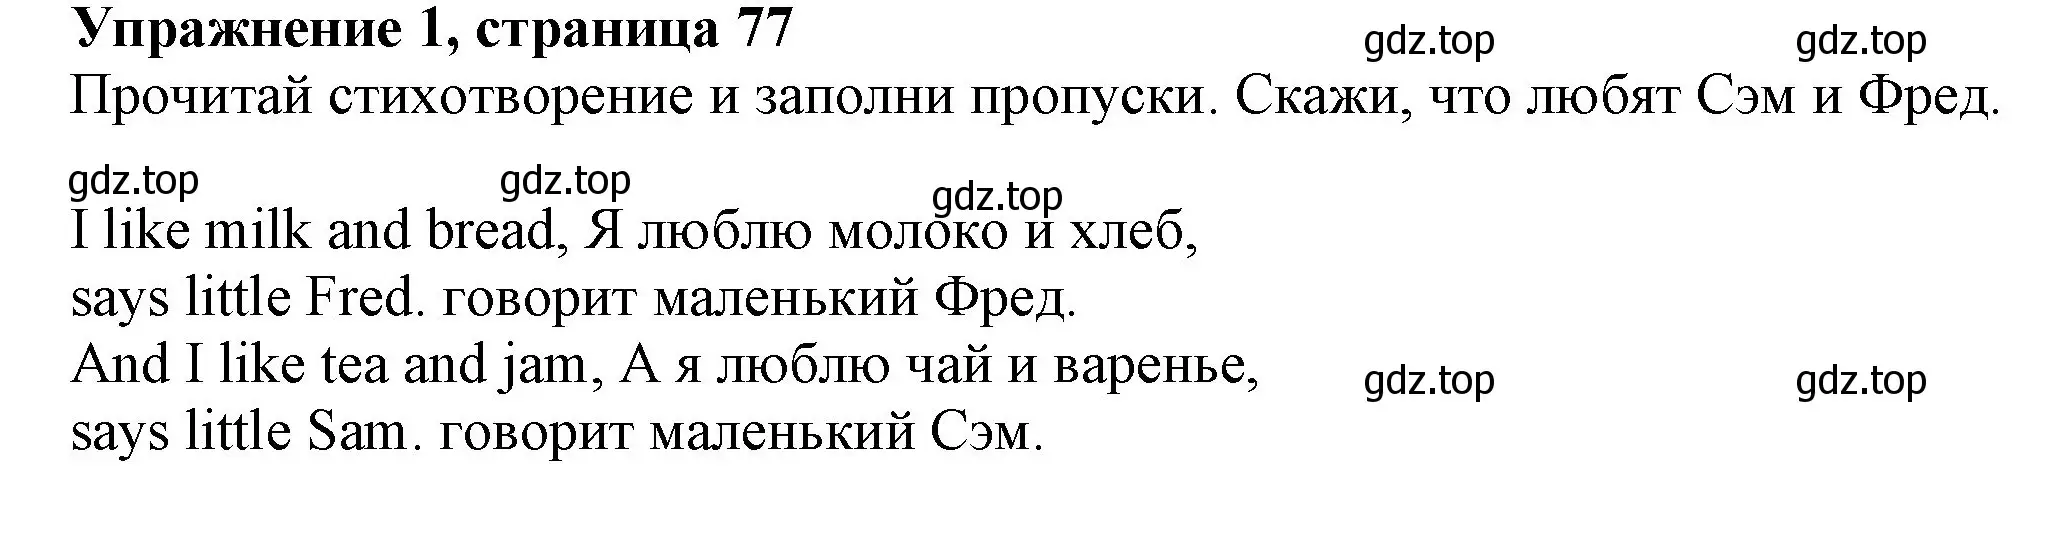 Решение номер 1 (страница 77) гдз по английскому языку 3 класс Биболетова, Денисенко, рабочая тетрадь